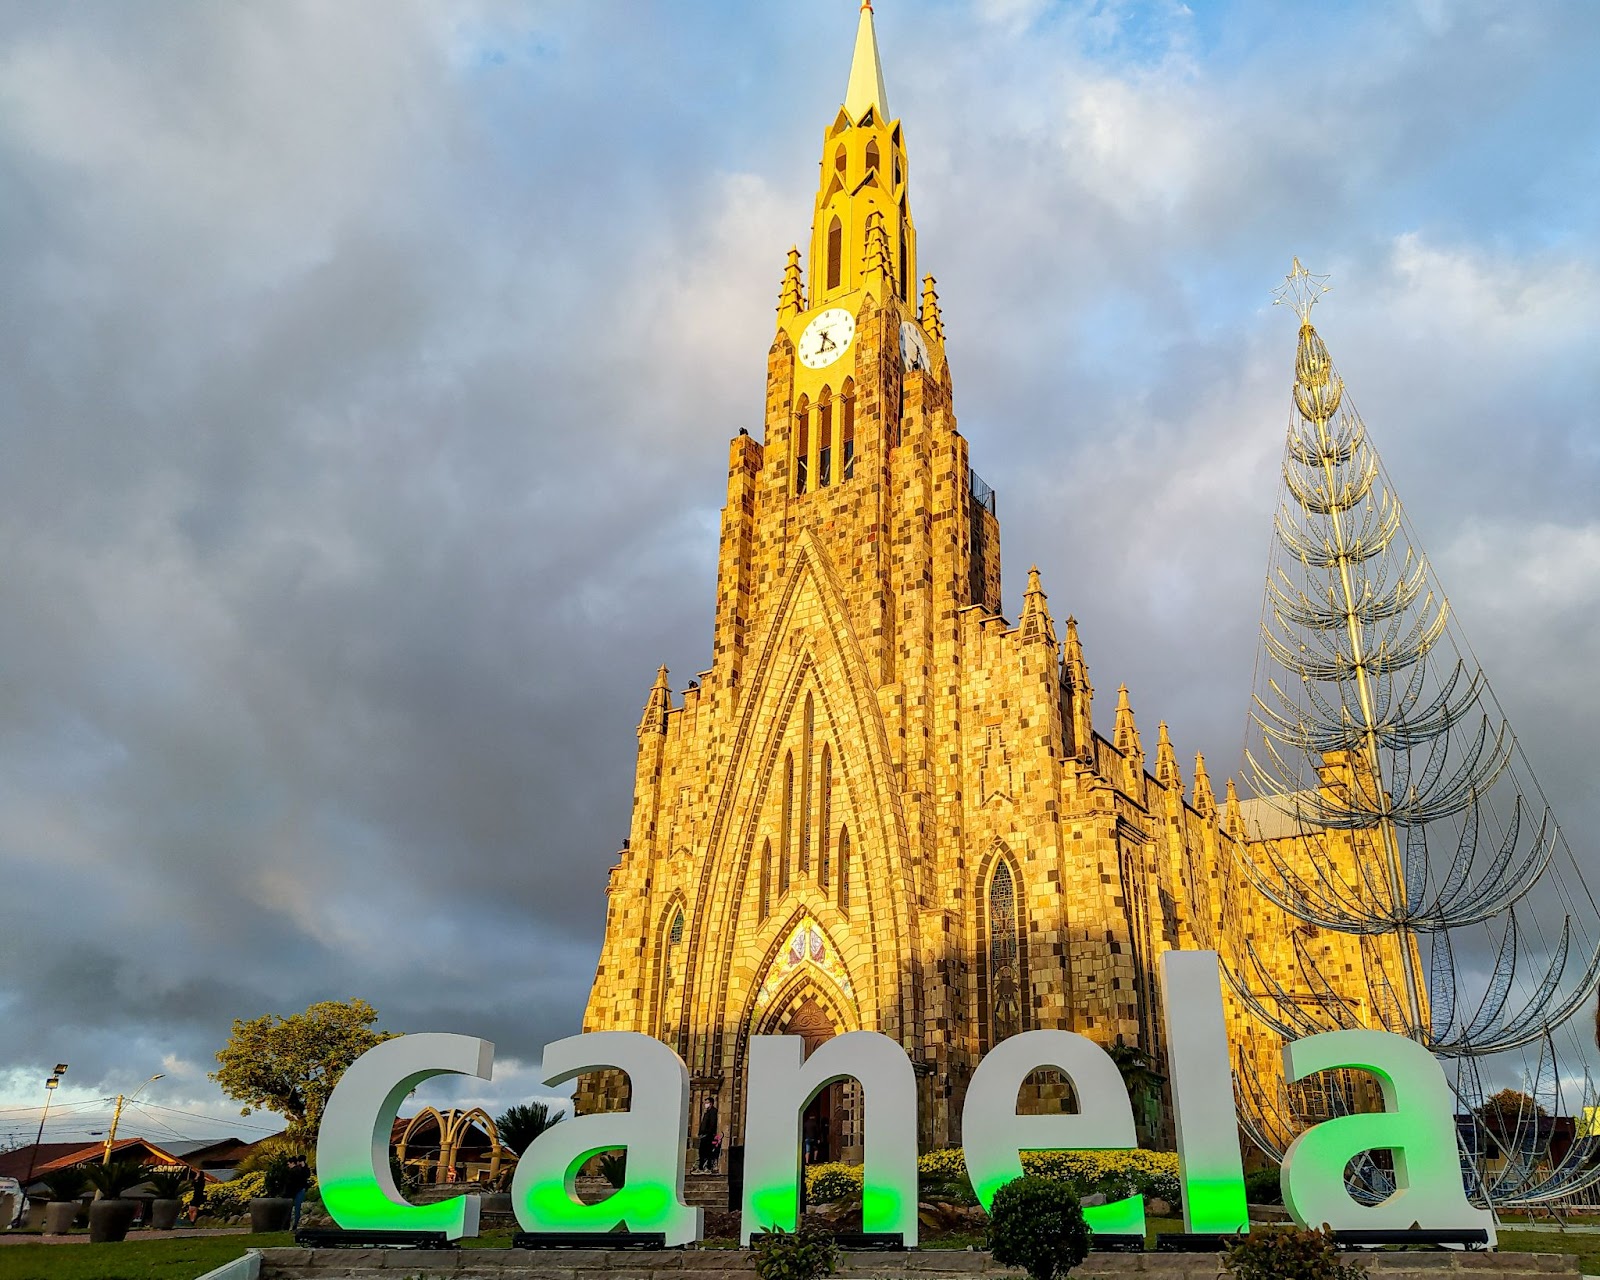 Catedral de Pedra iluminada pela luz dourada do entardecer, com o letreiro escrito “Canela” iluminado por luzes verdes.